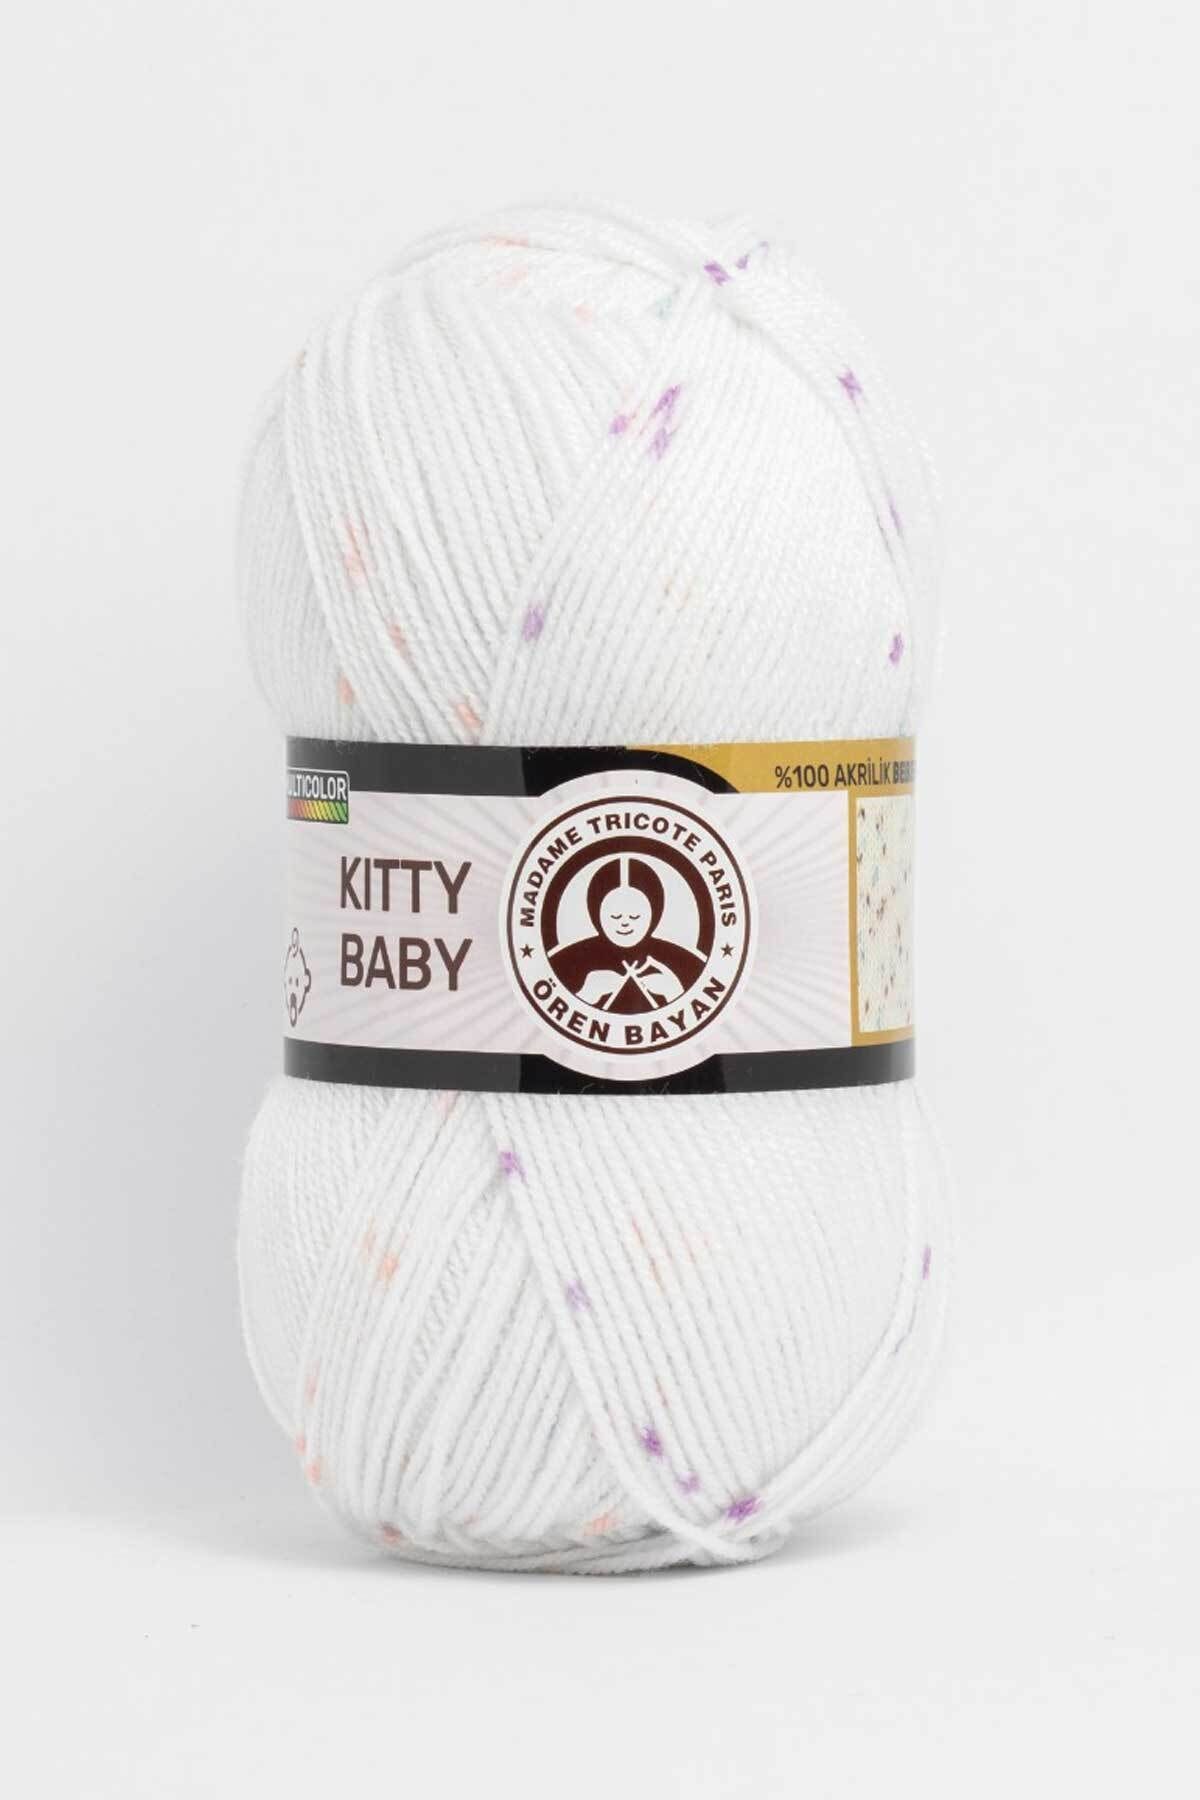 Ören Bayan Kitty Baby El Örgü Ipi 100gr 1adettir Renk 388 Model 0262